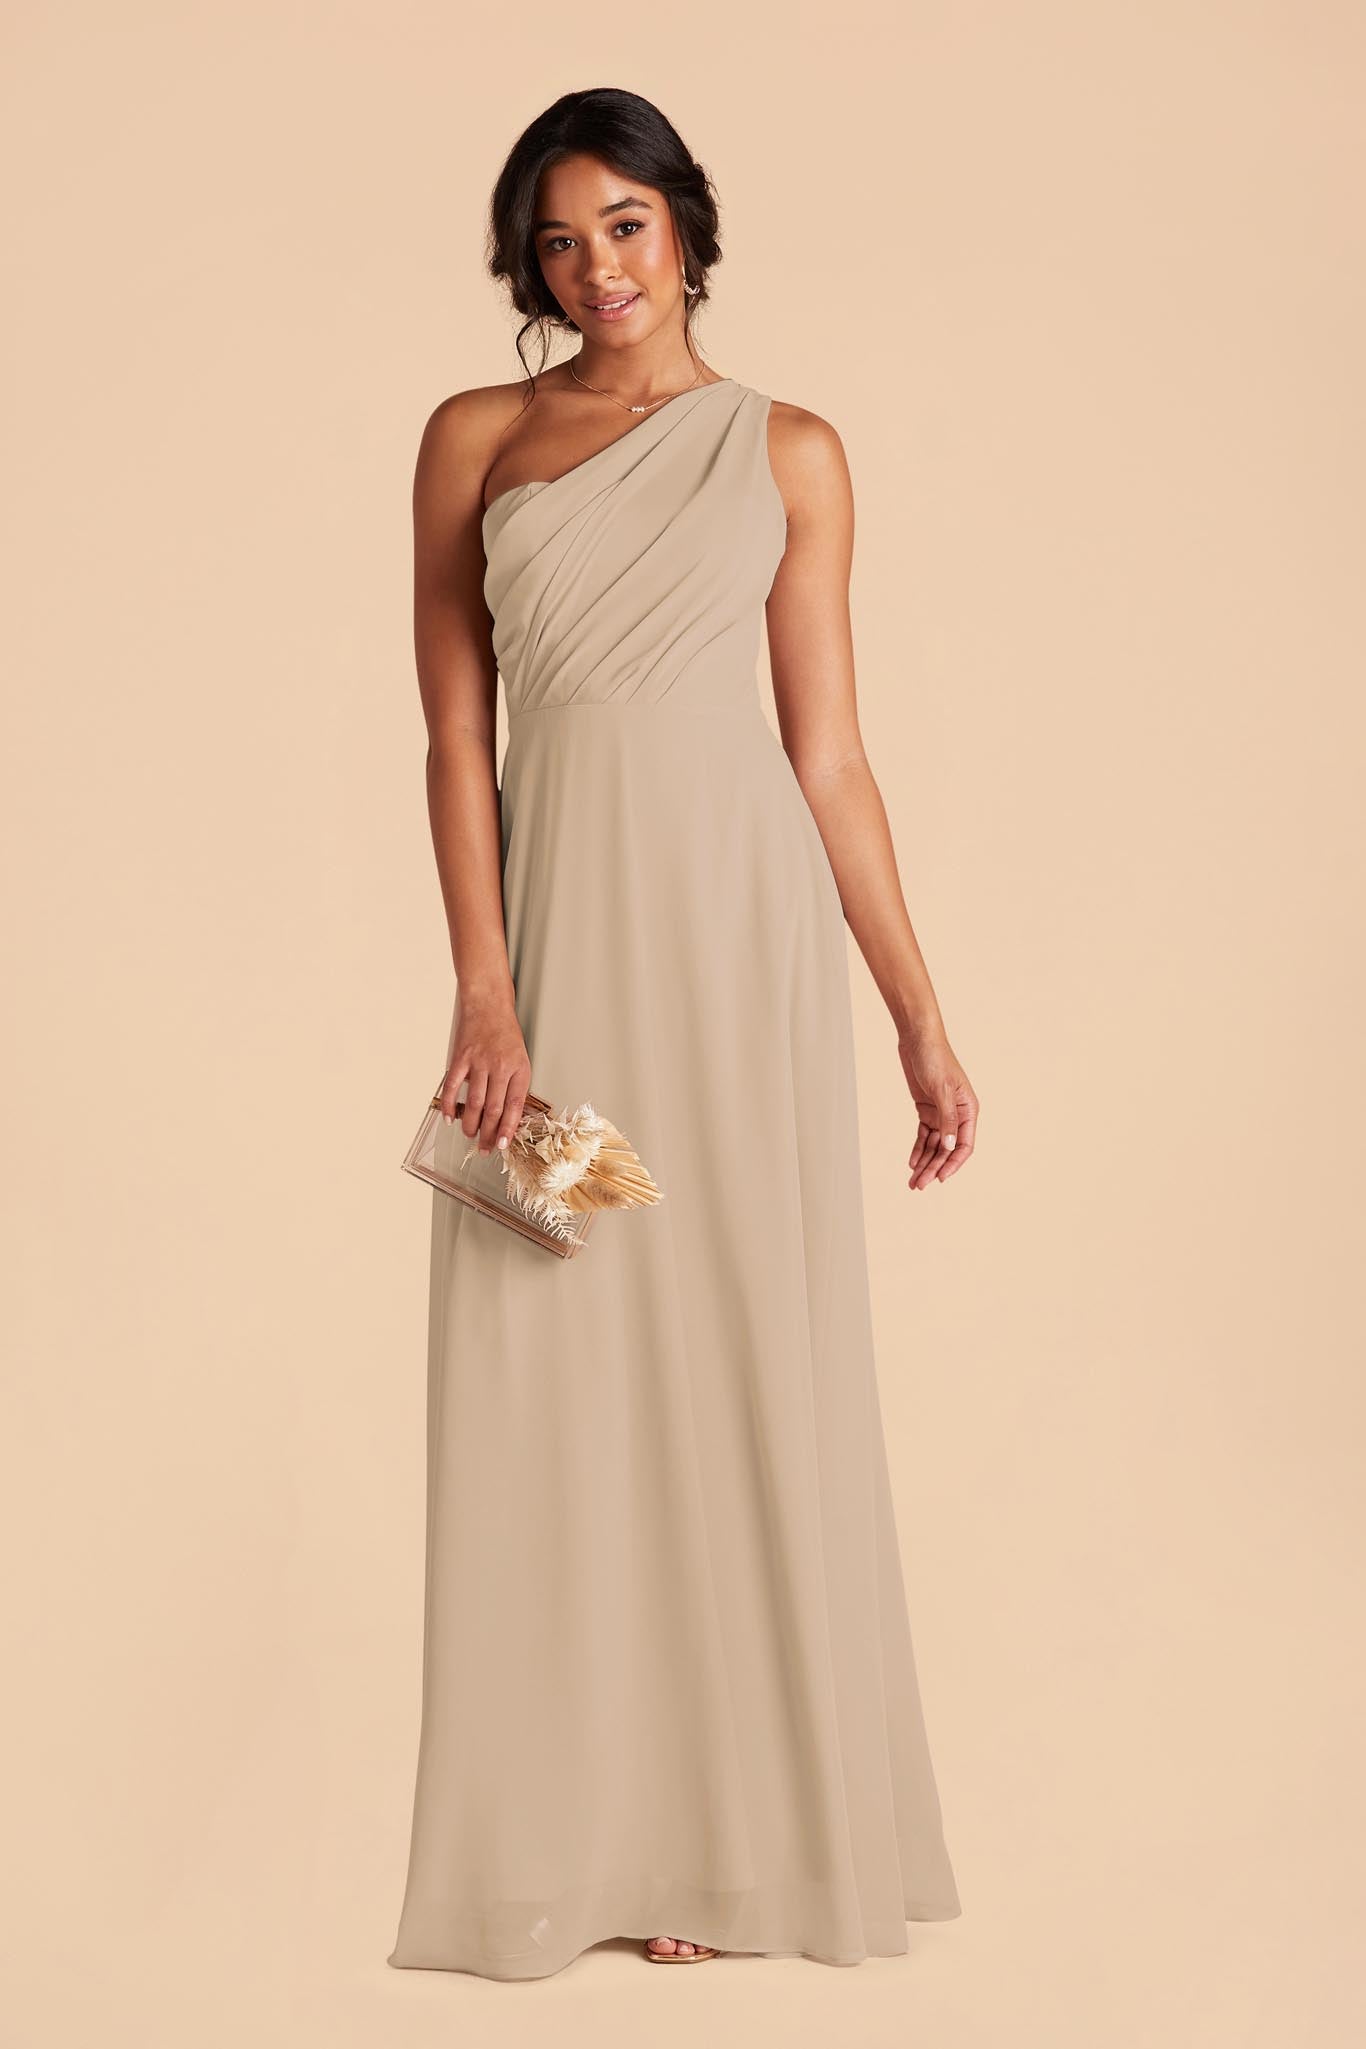 Almond Kira Chiffon Dress by Birdy Grey